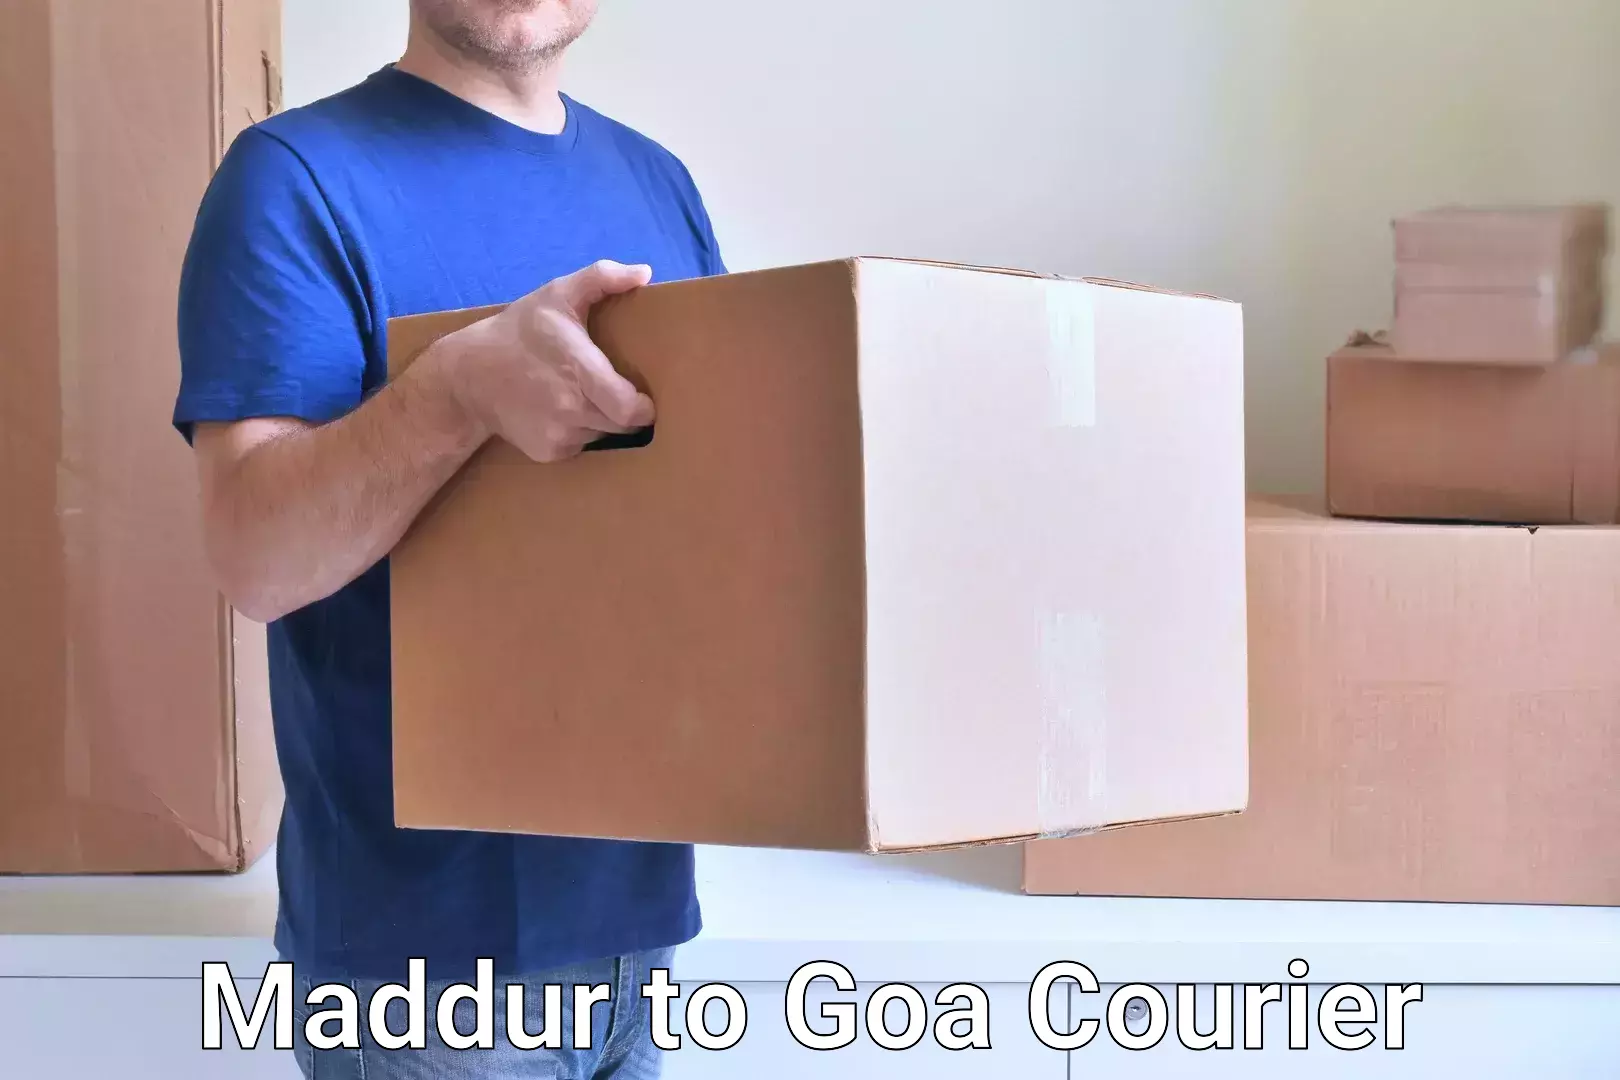 Reliable courier services Maddur to Mormugao Port